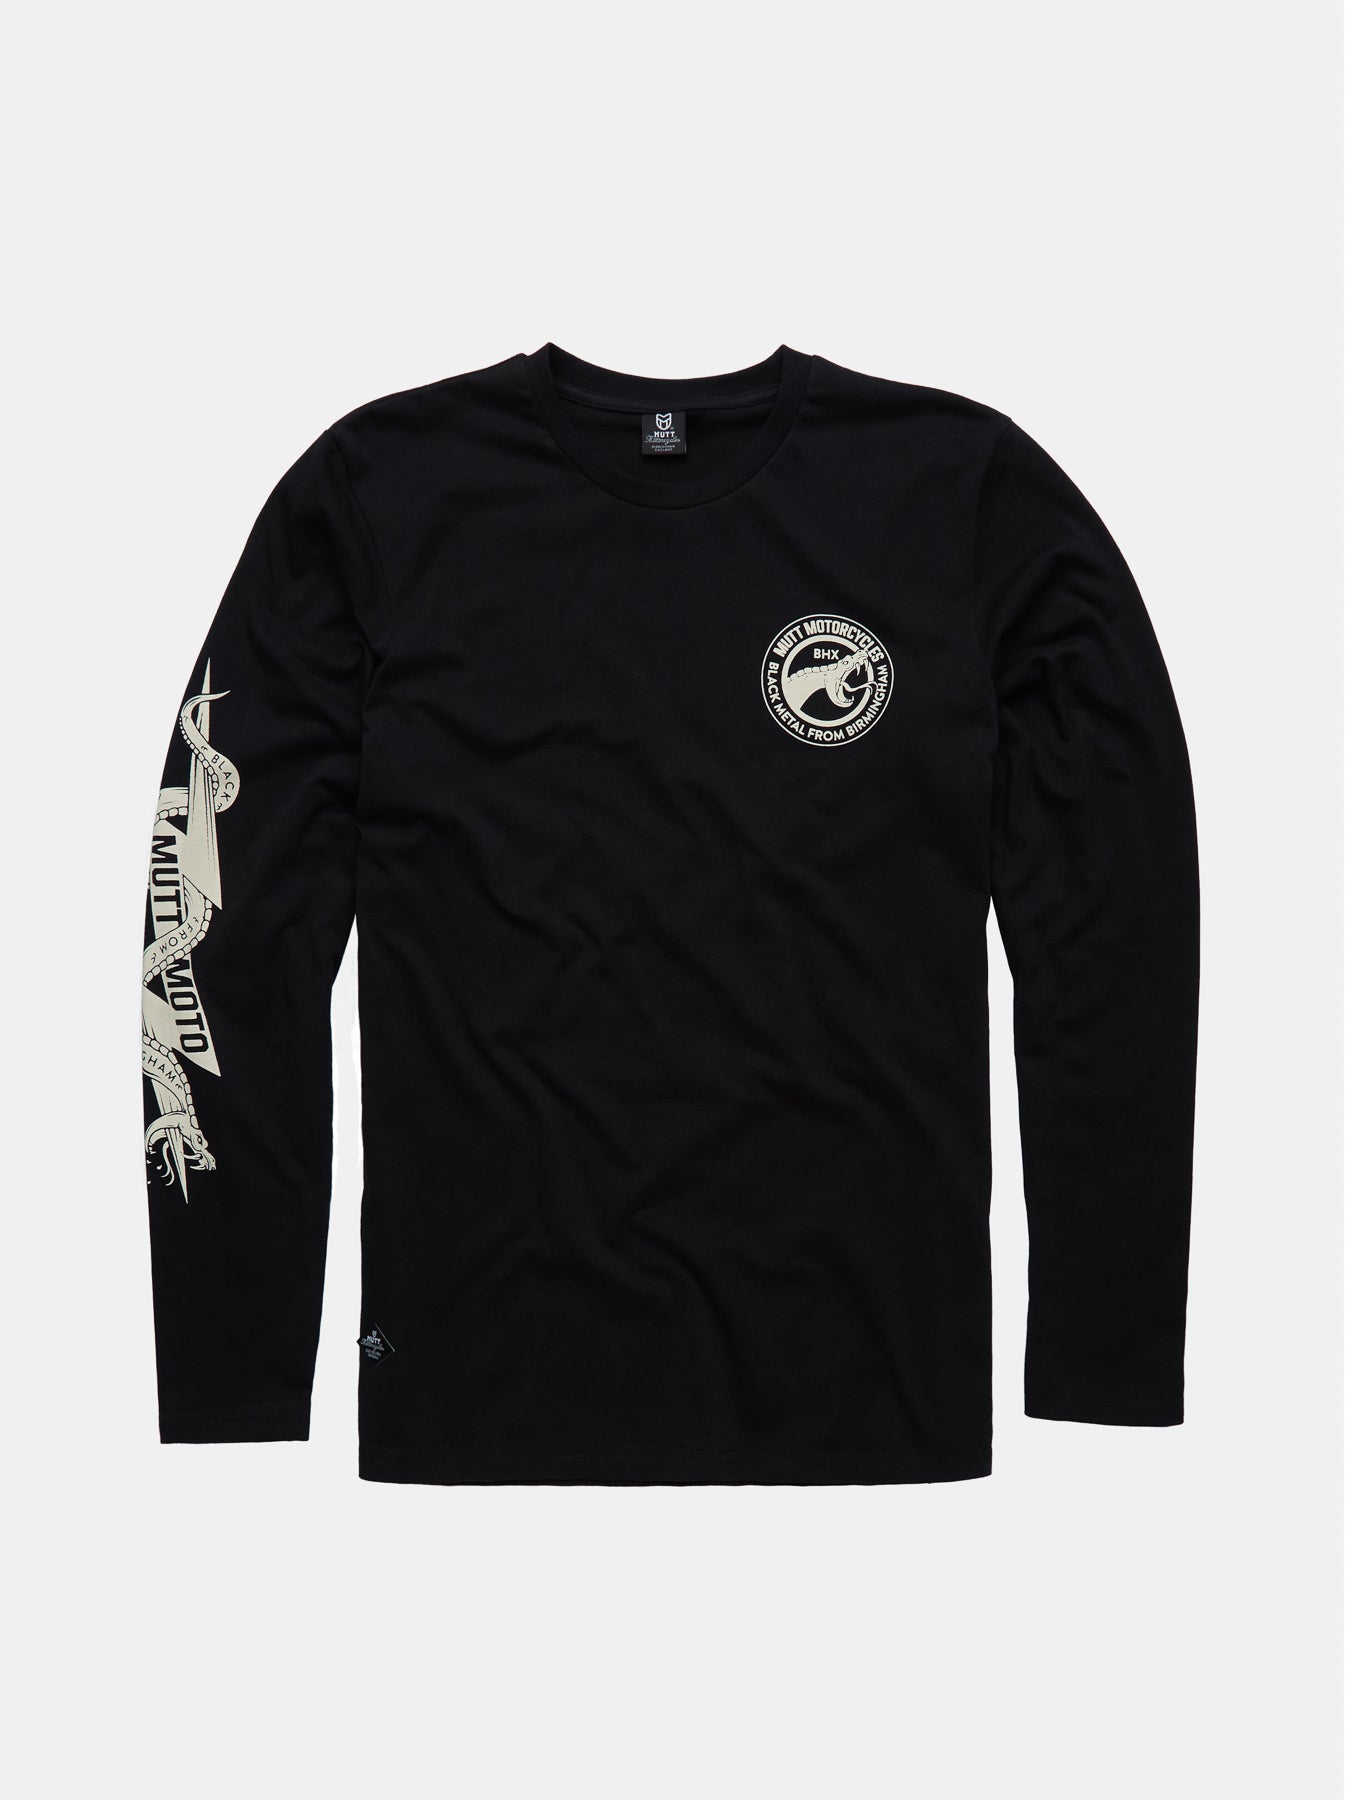 Mutt Black Adder Long Sleeve T-Shirt